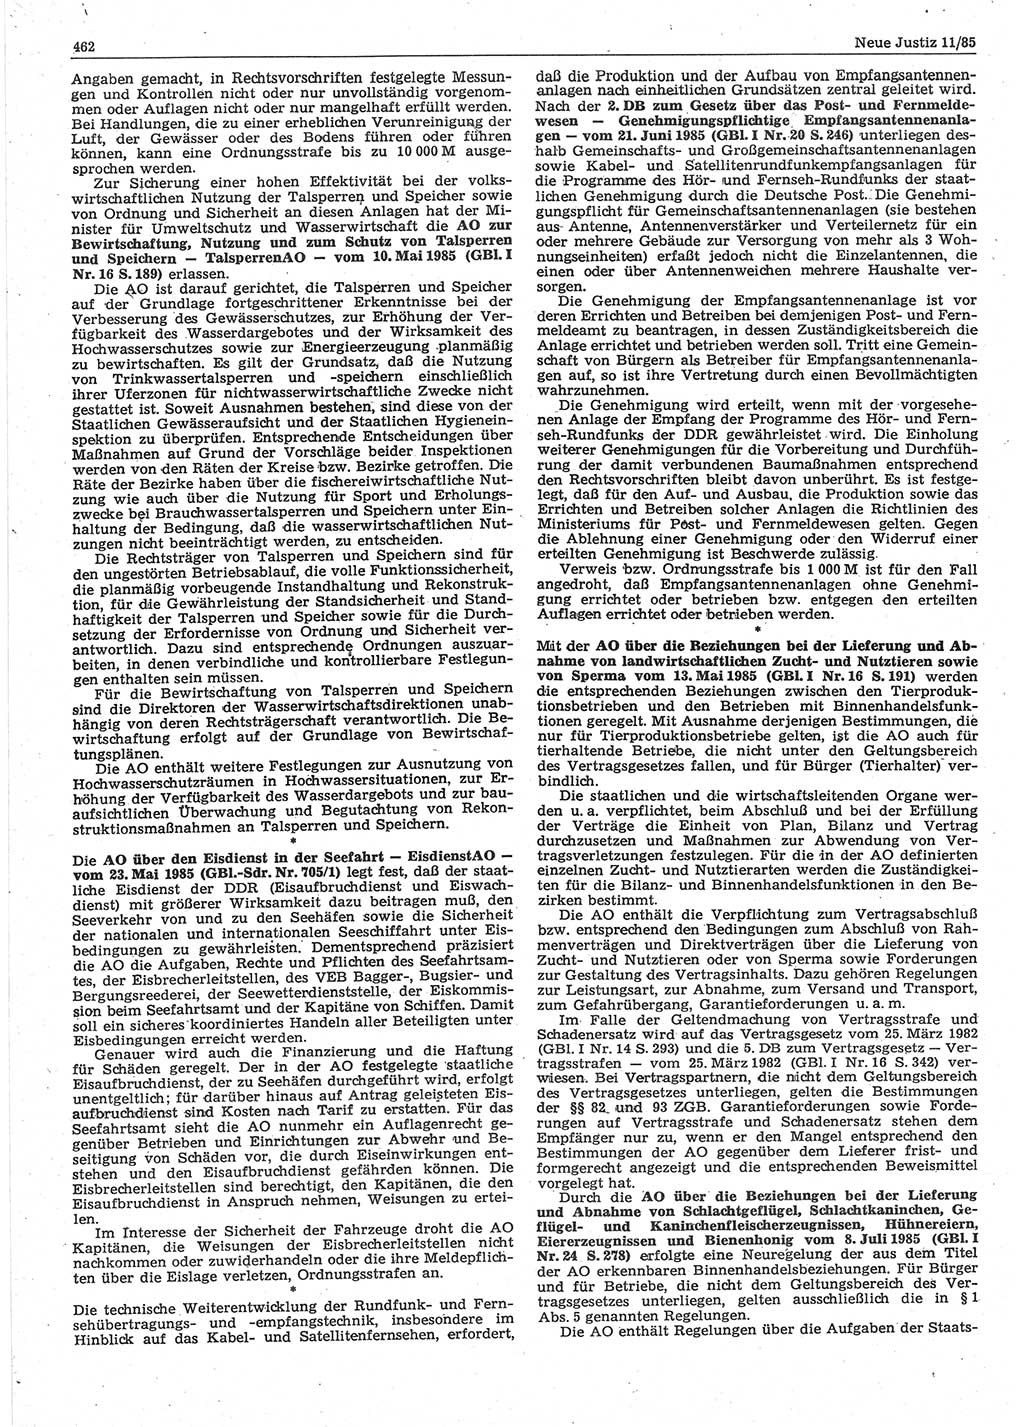 Neue Justiz (NJ), Zeitschrift für sozialistisches Recht und Gesetzlichkeit [Deutsche Demokratische Republik (DDR)], 39. Jahrgang 1985, Seite 462 (NJ DDR 1985, S. 462)